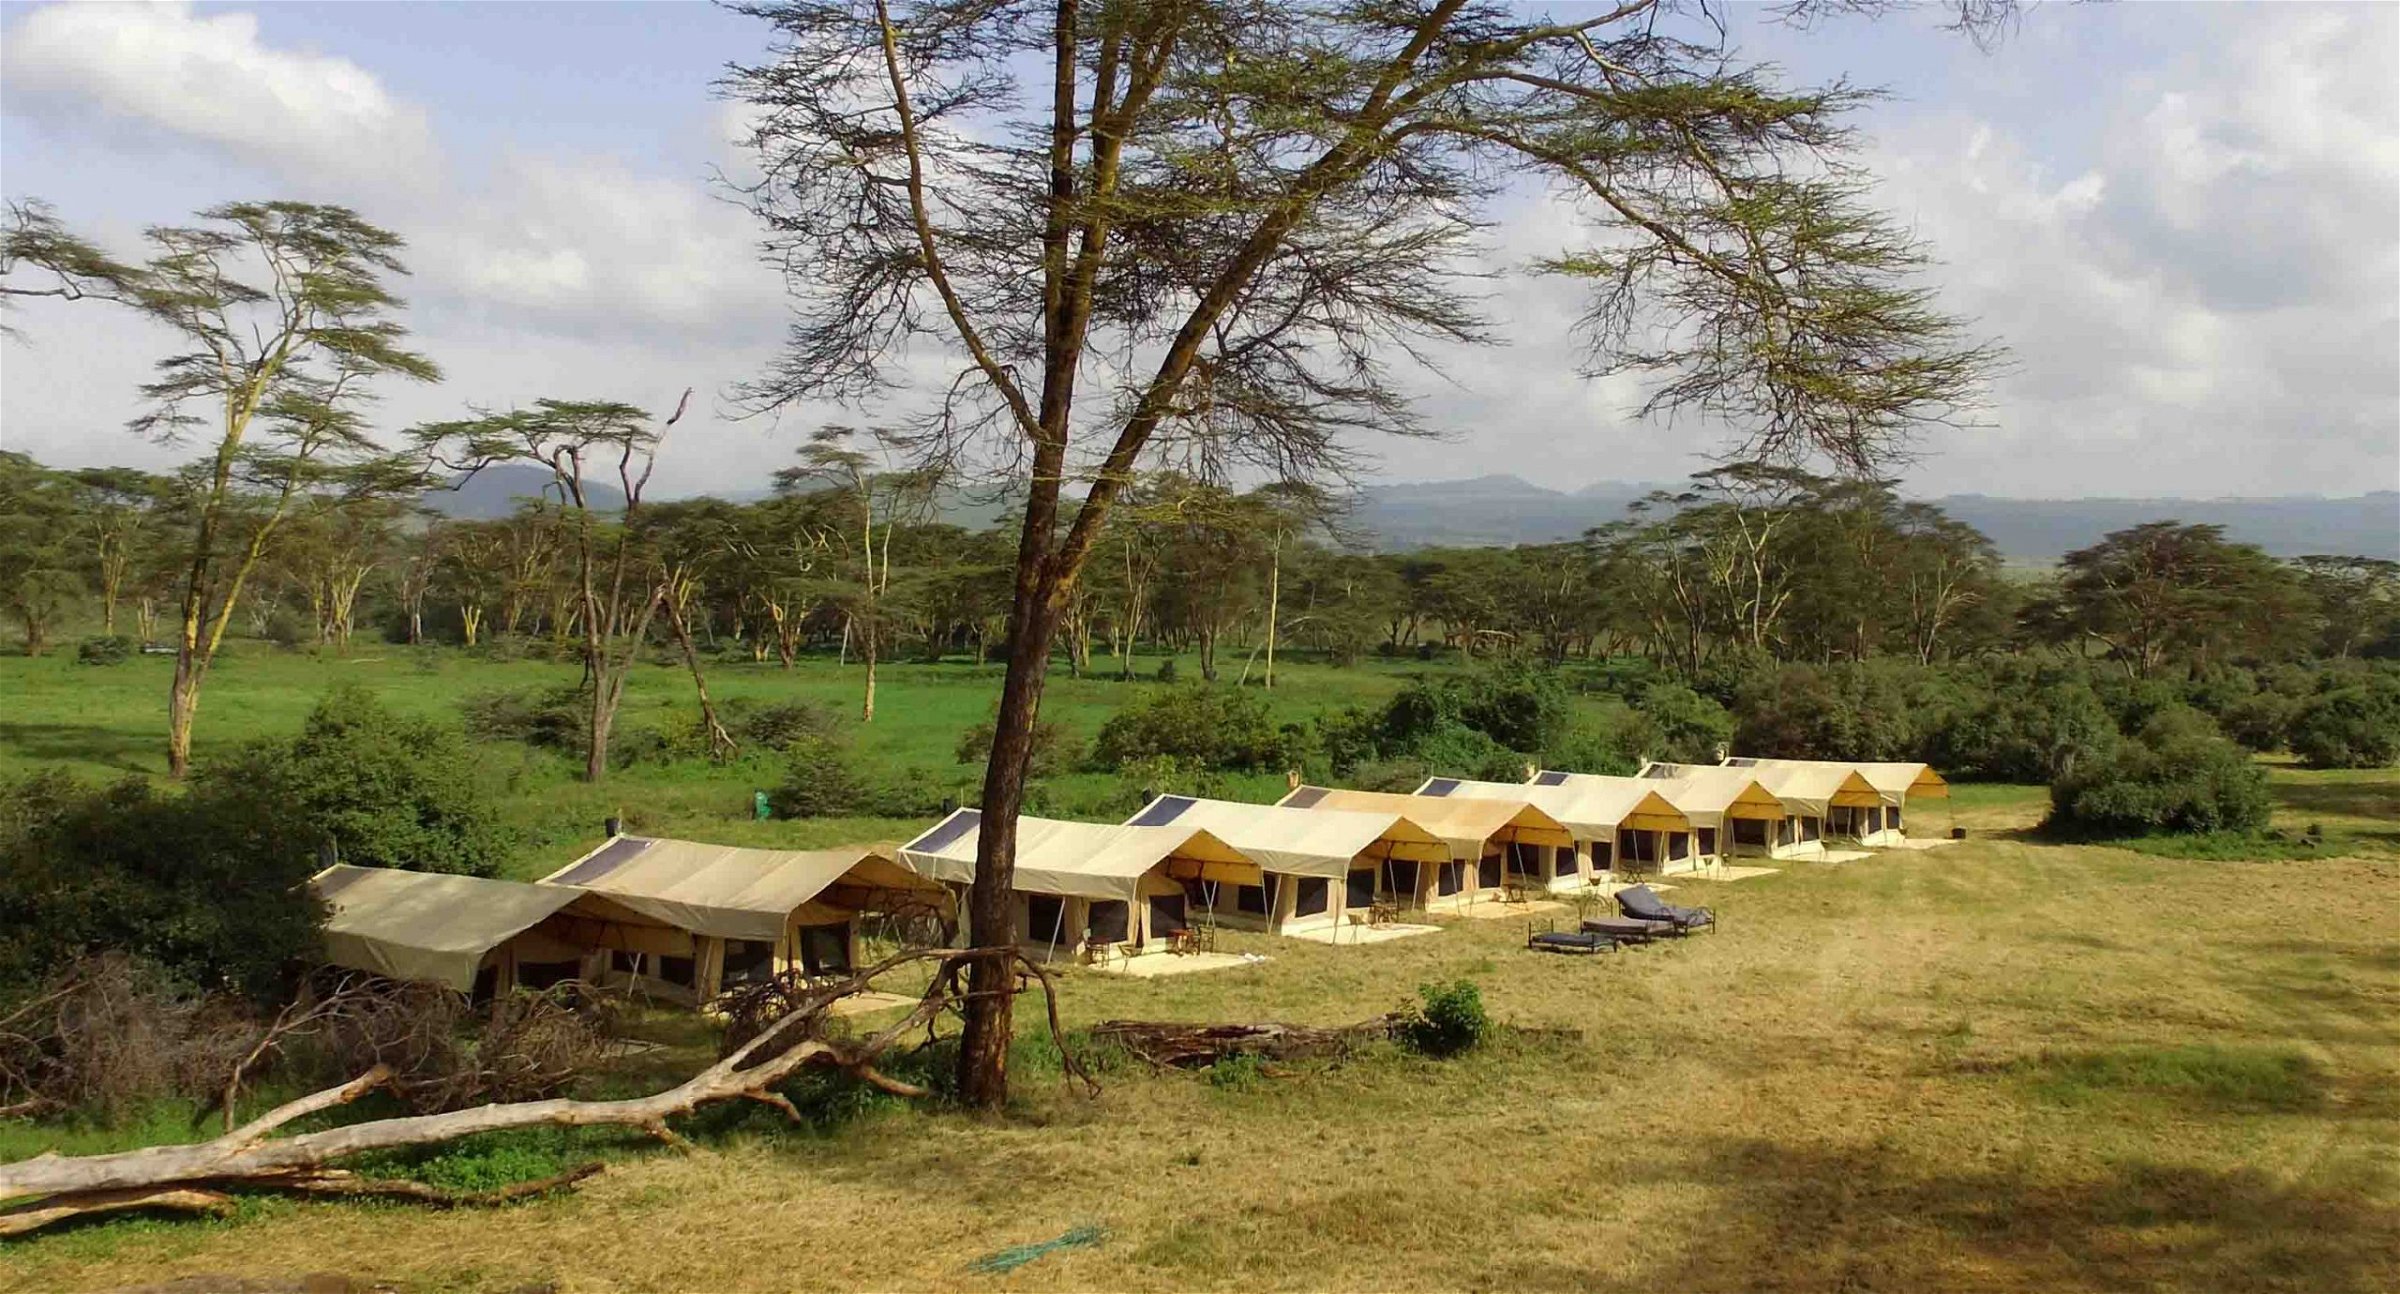 Kenya tents for hire